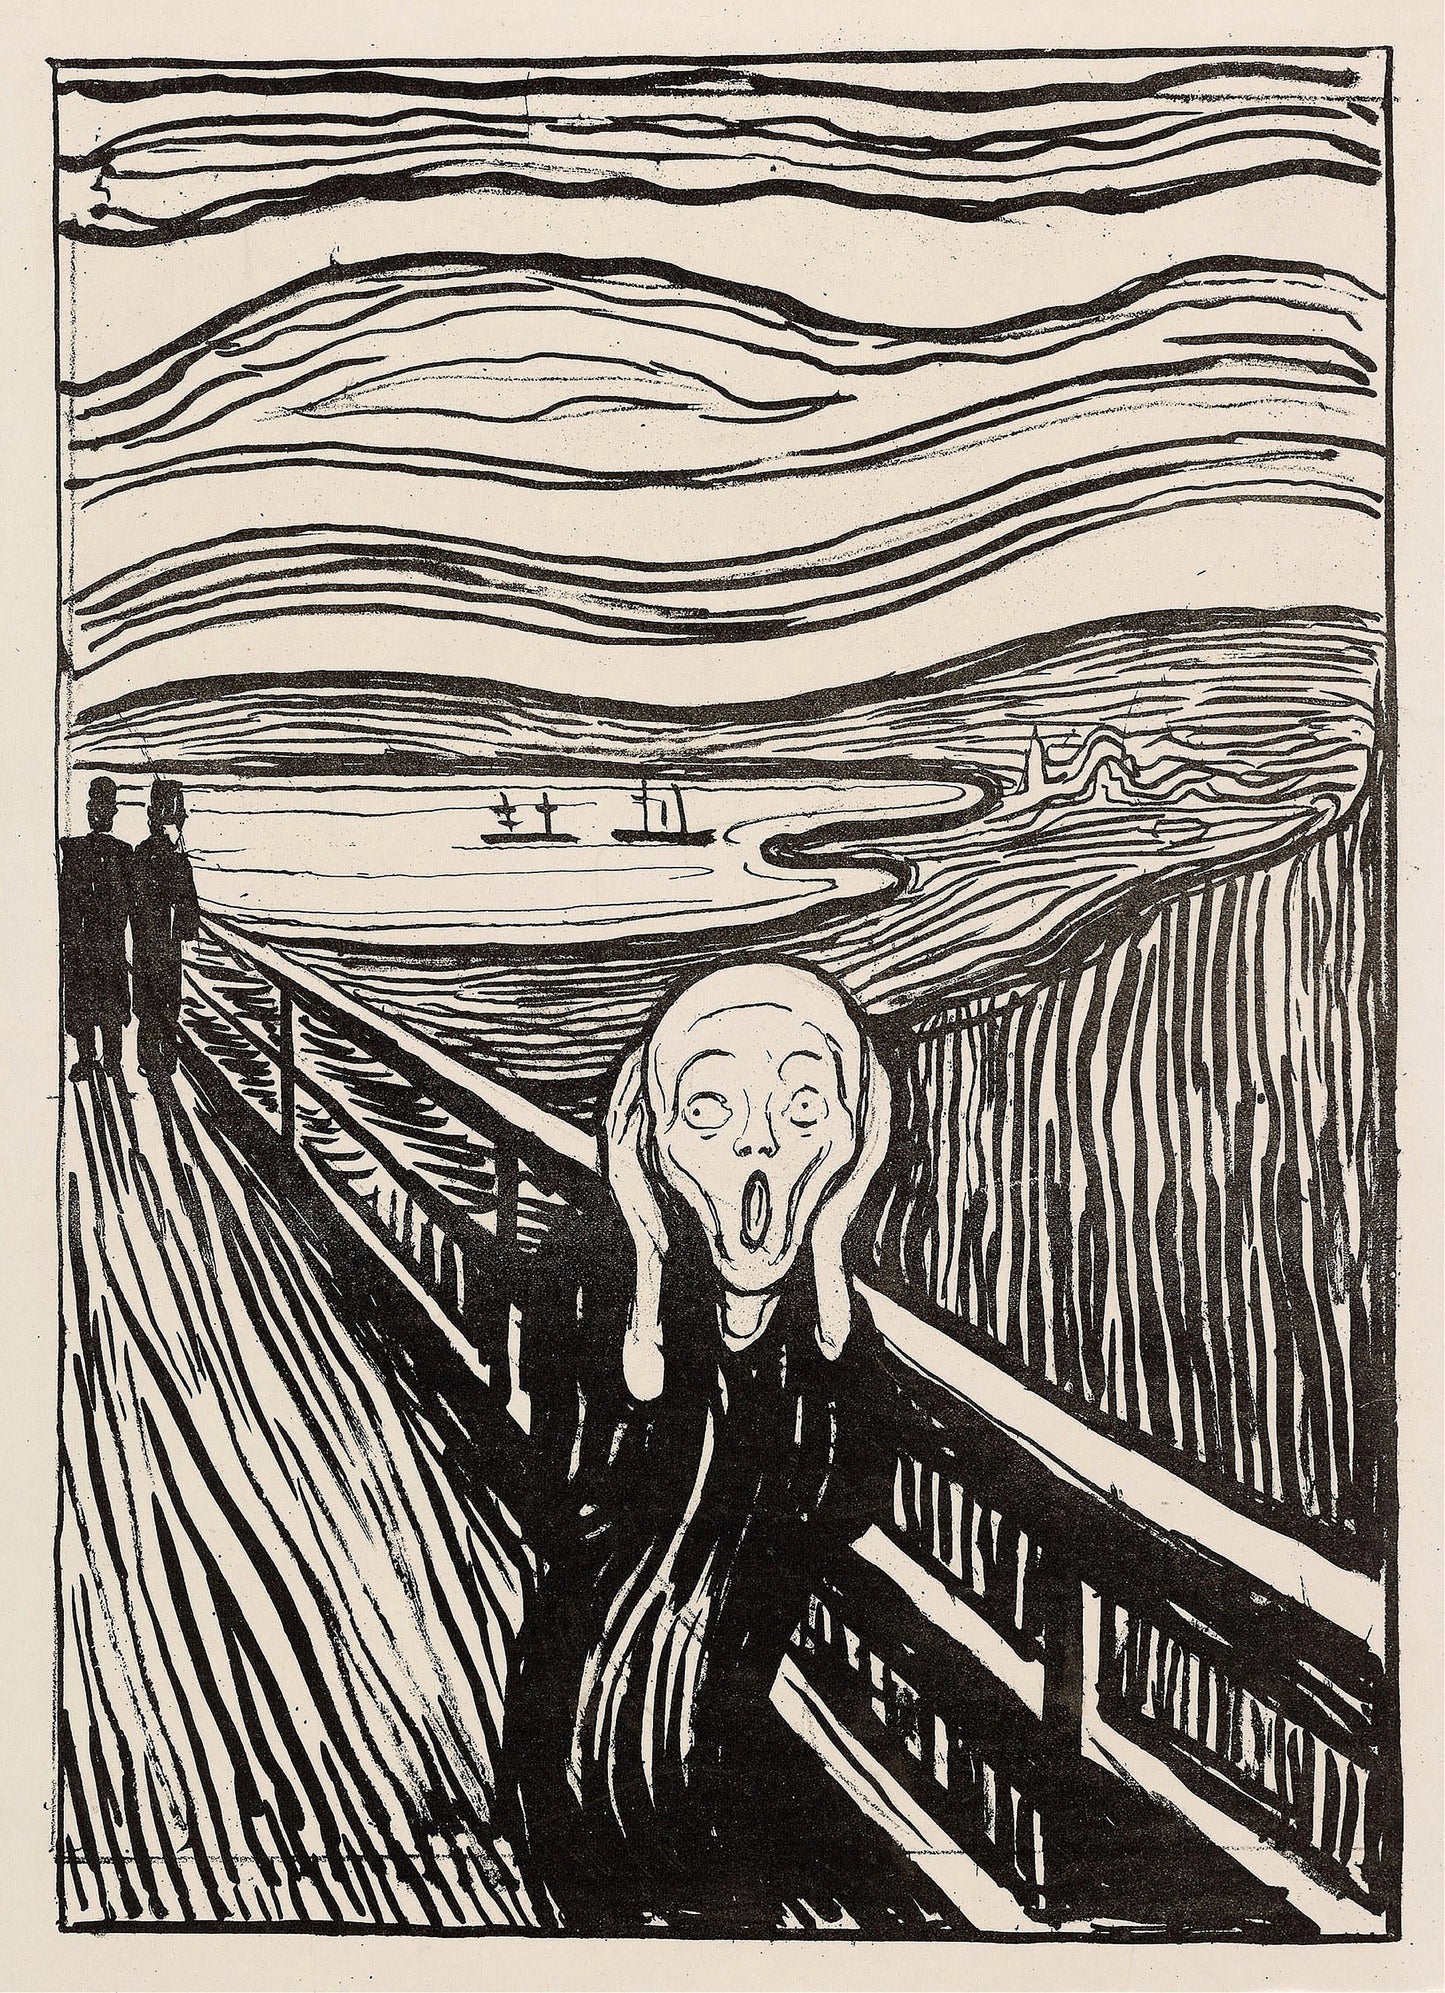 Edvard Munch Symbolist Artworks Set 1 [33 Images]